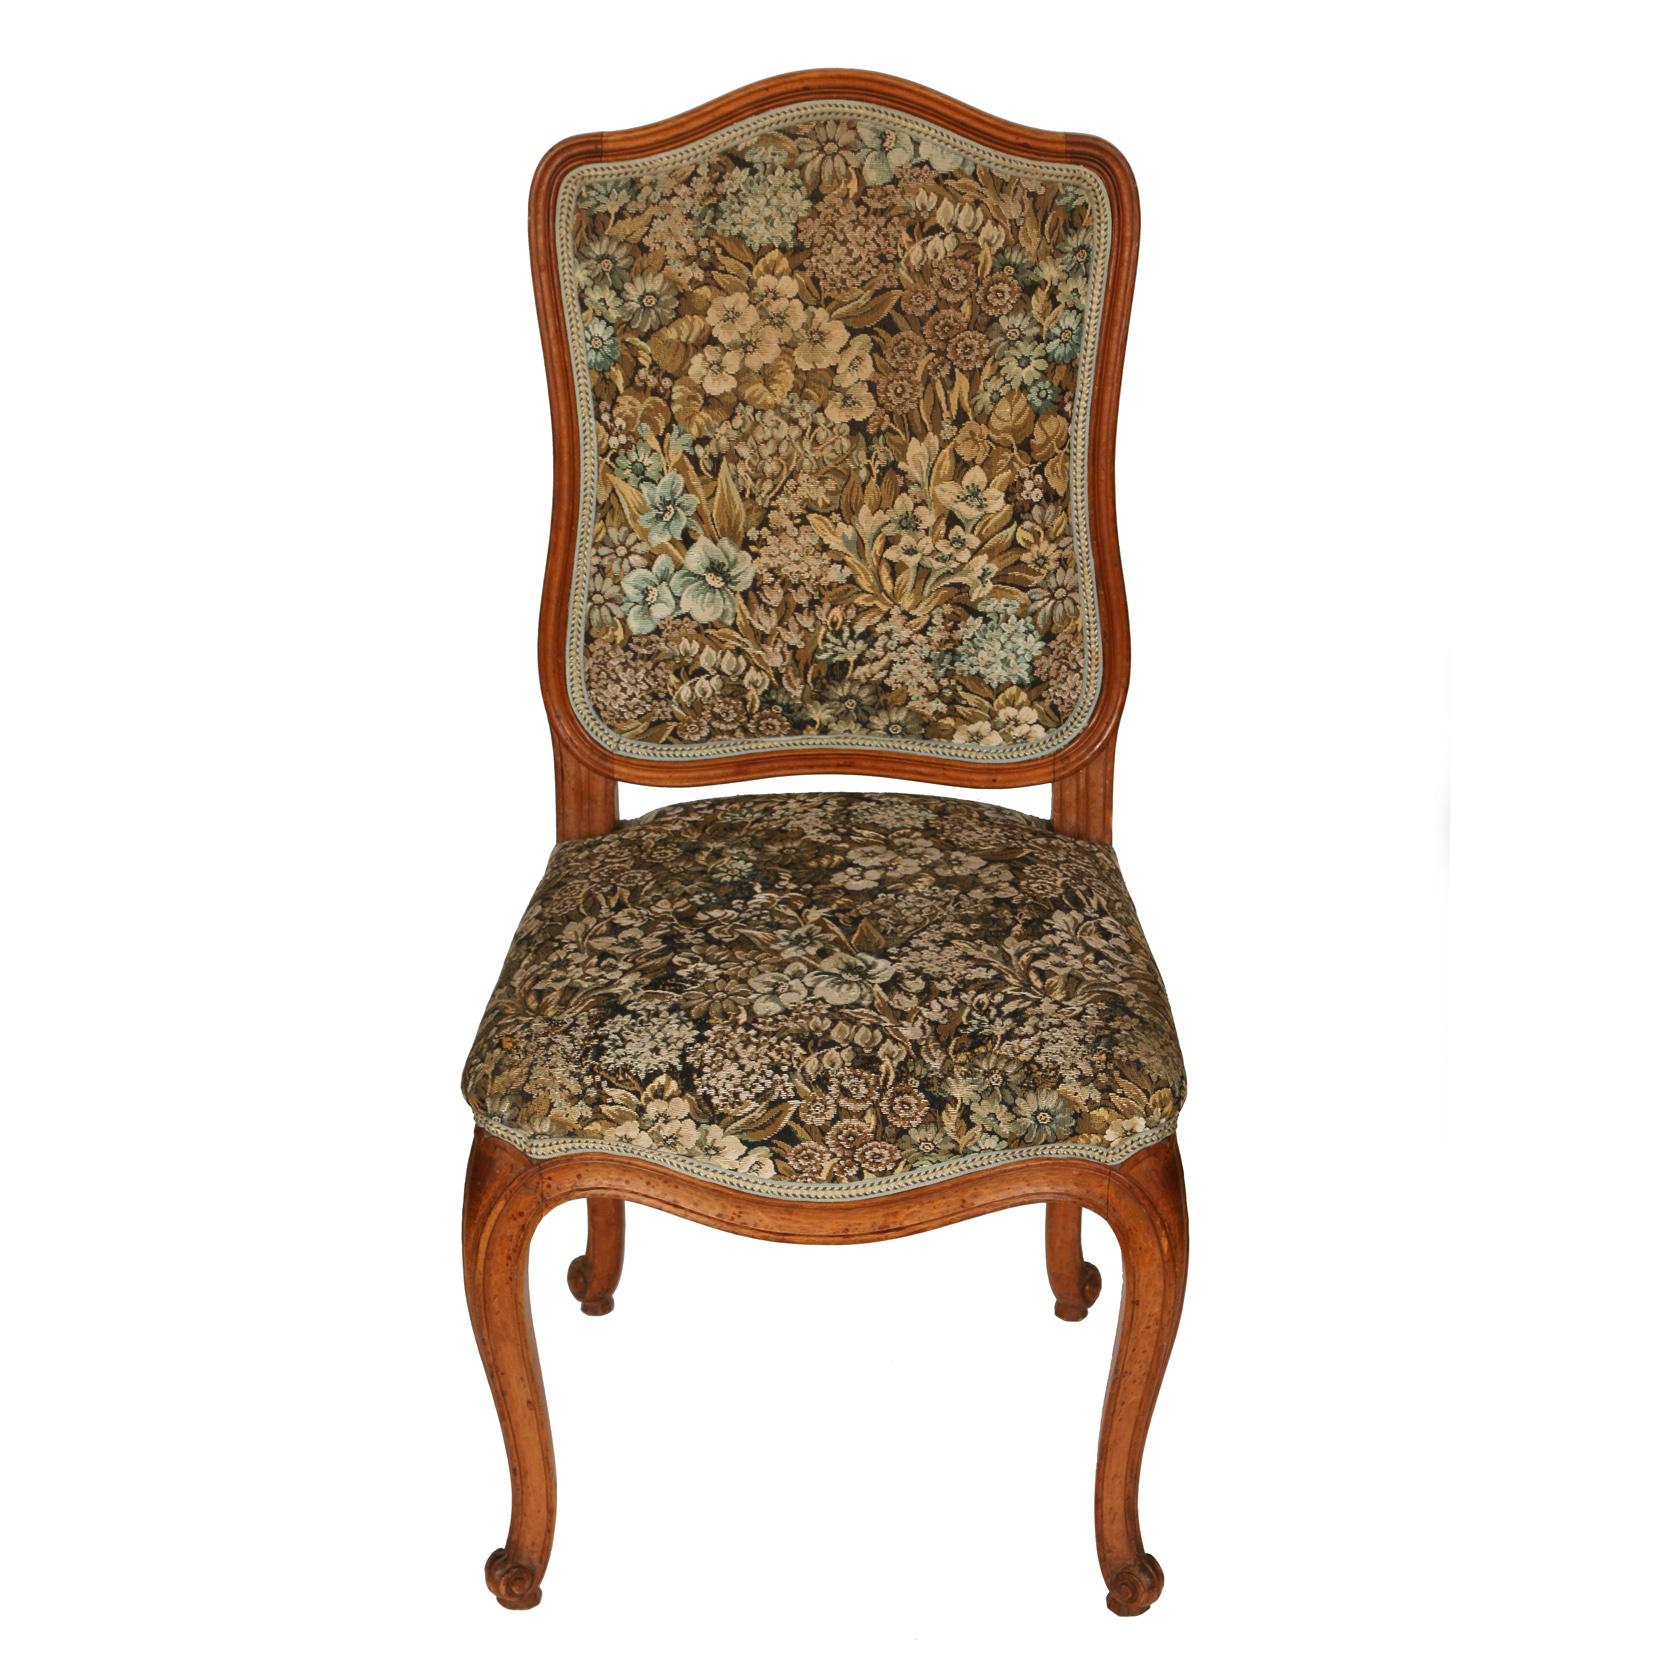 Un ensemble de huit chaises de salle à manger françaises tapissées avec un dossier courbé, un tablier d'assise et un pied cabriole. Tissu floral dans des tons d'or, de brun clair et de bleu pâle sur un fond sombre.